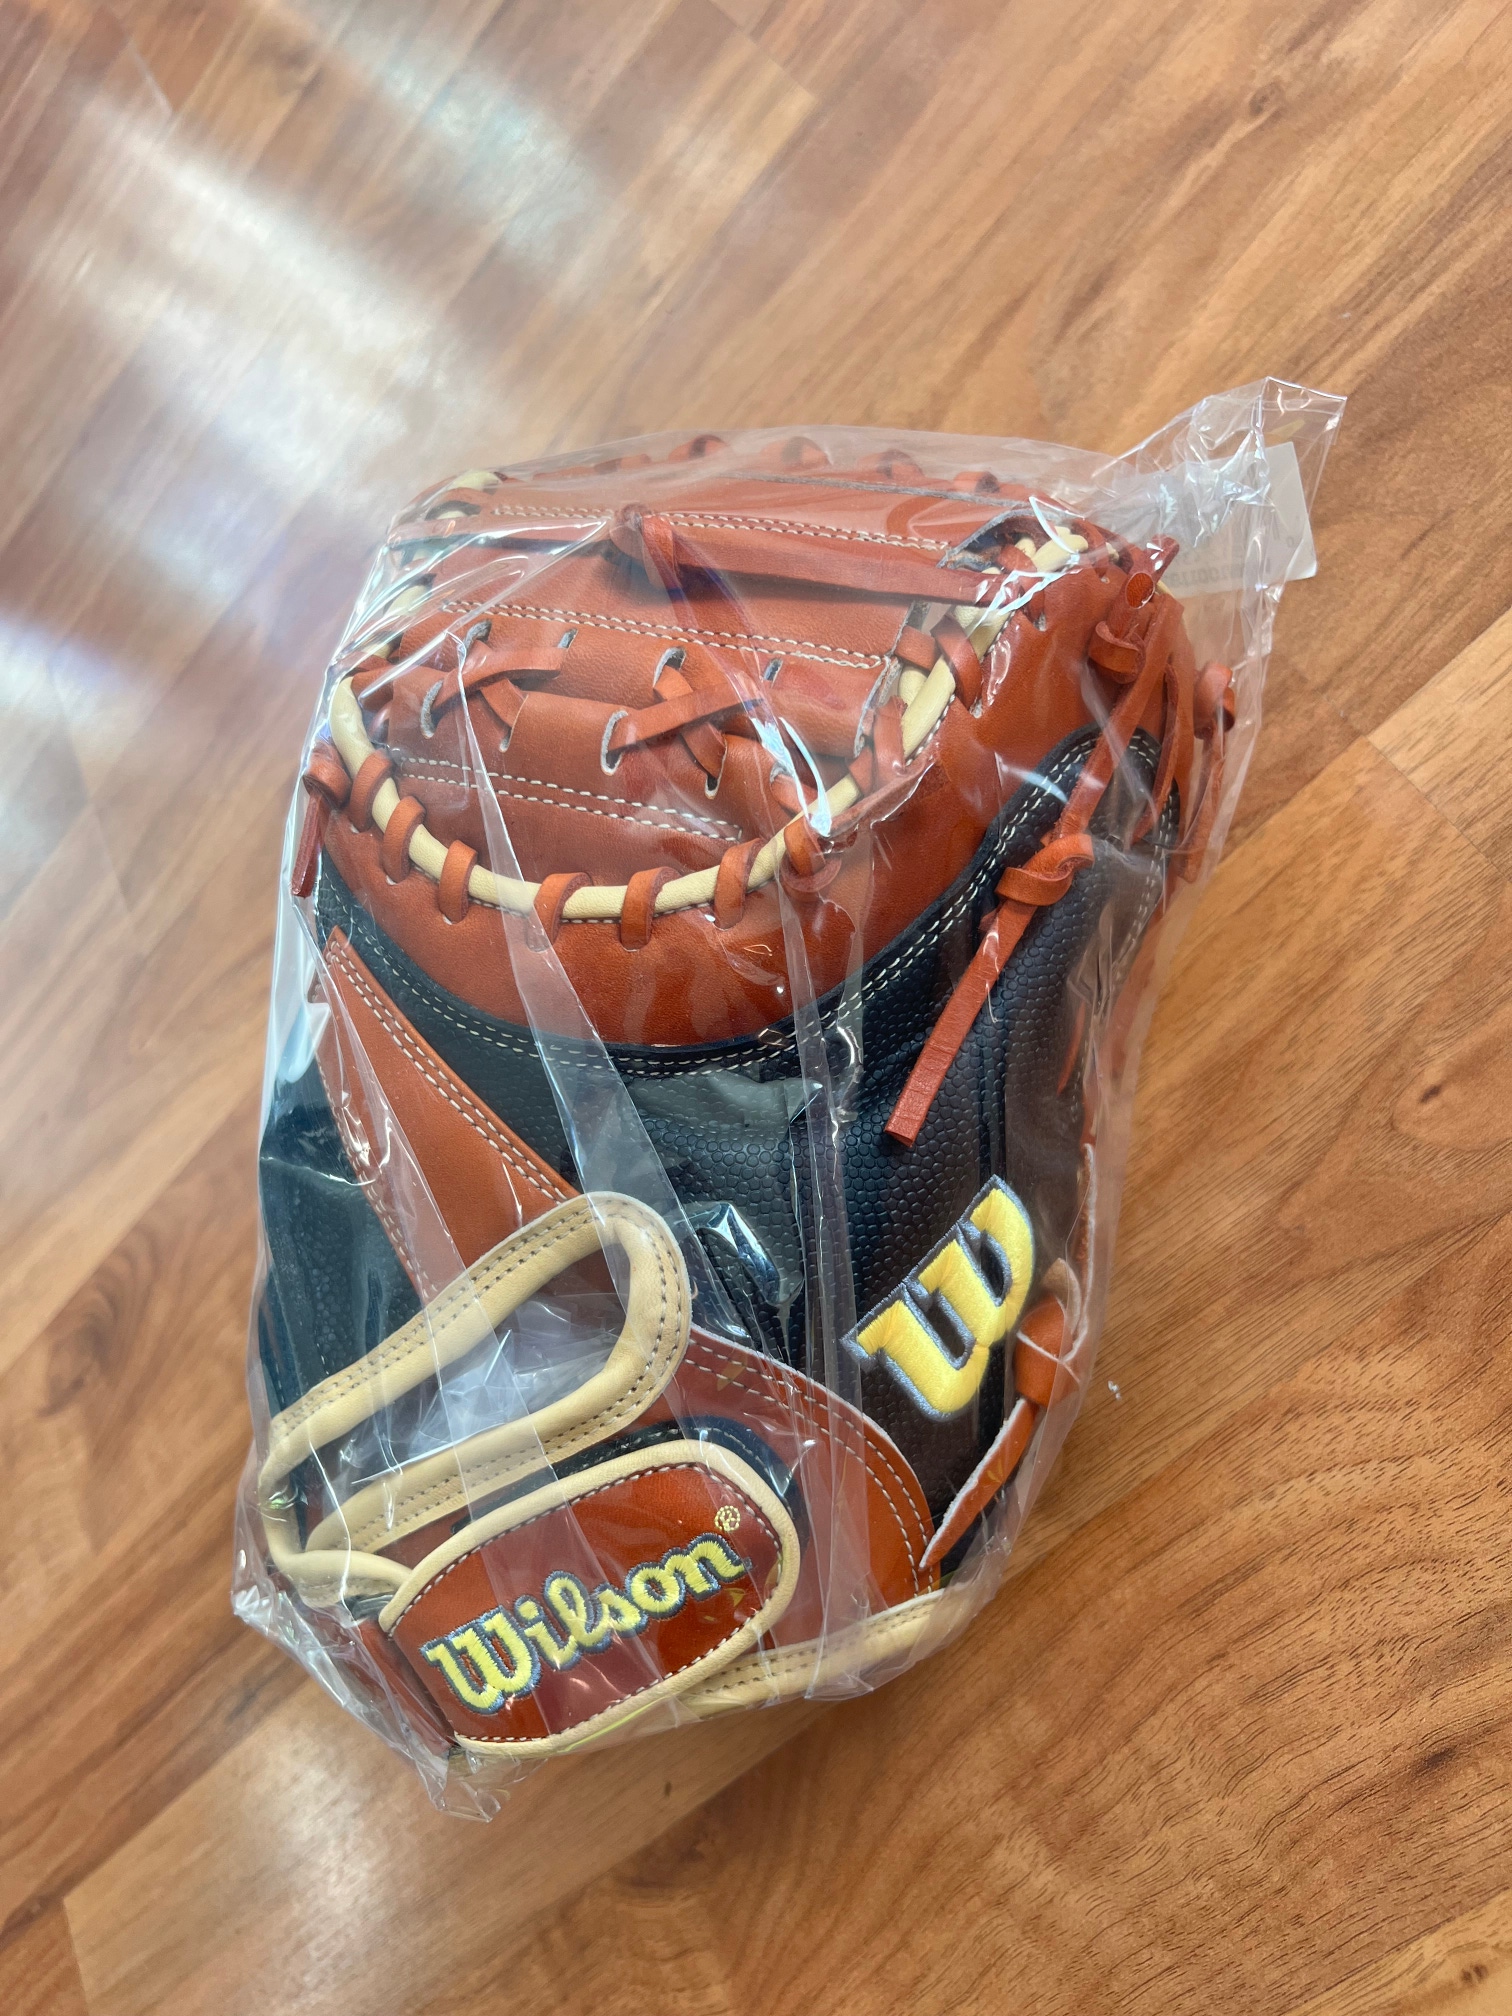 New Right Hand Throw Wilson Catcher's A2000 Baseball Glove 34"